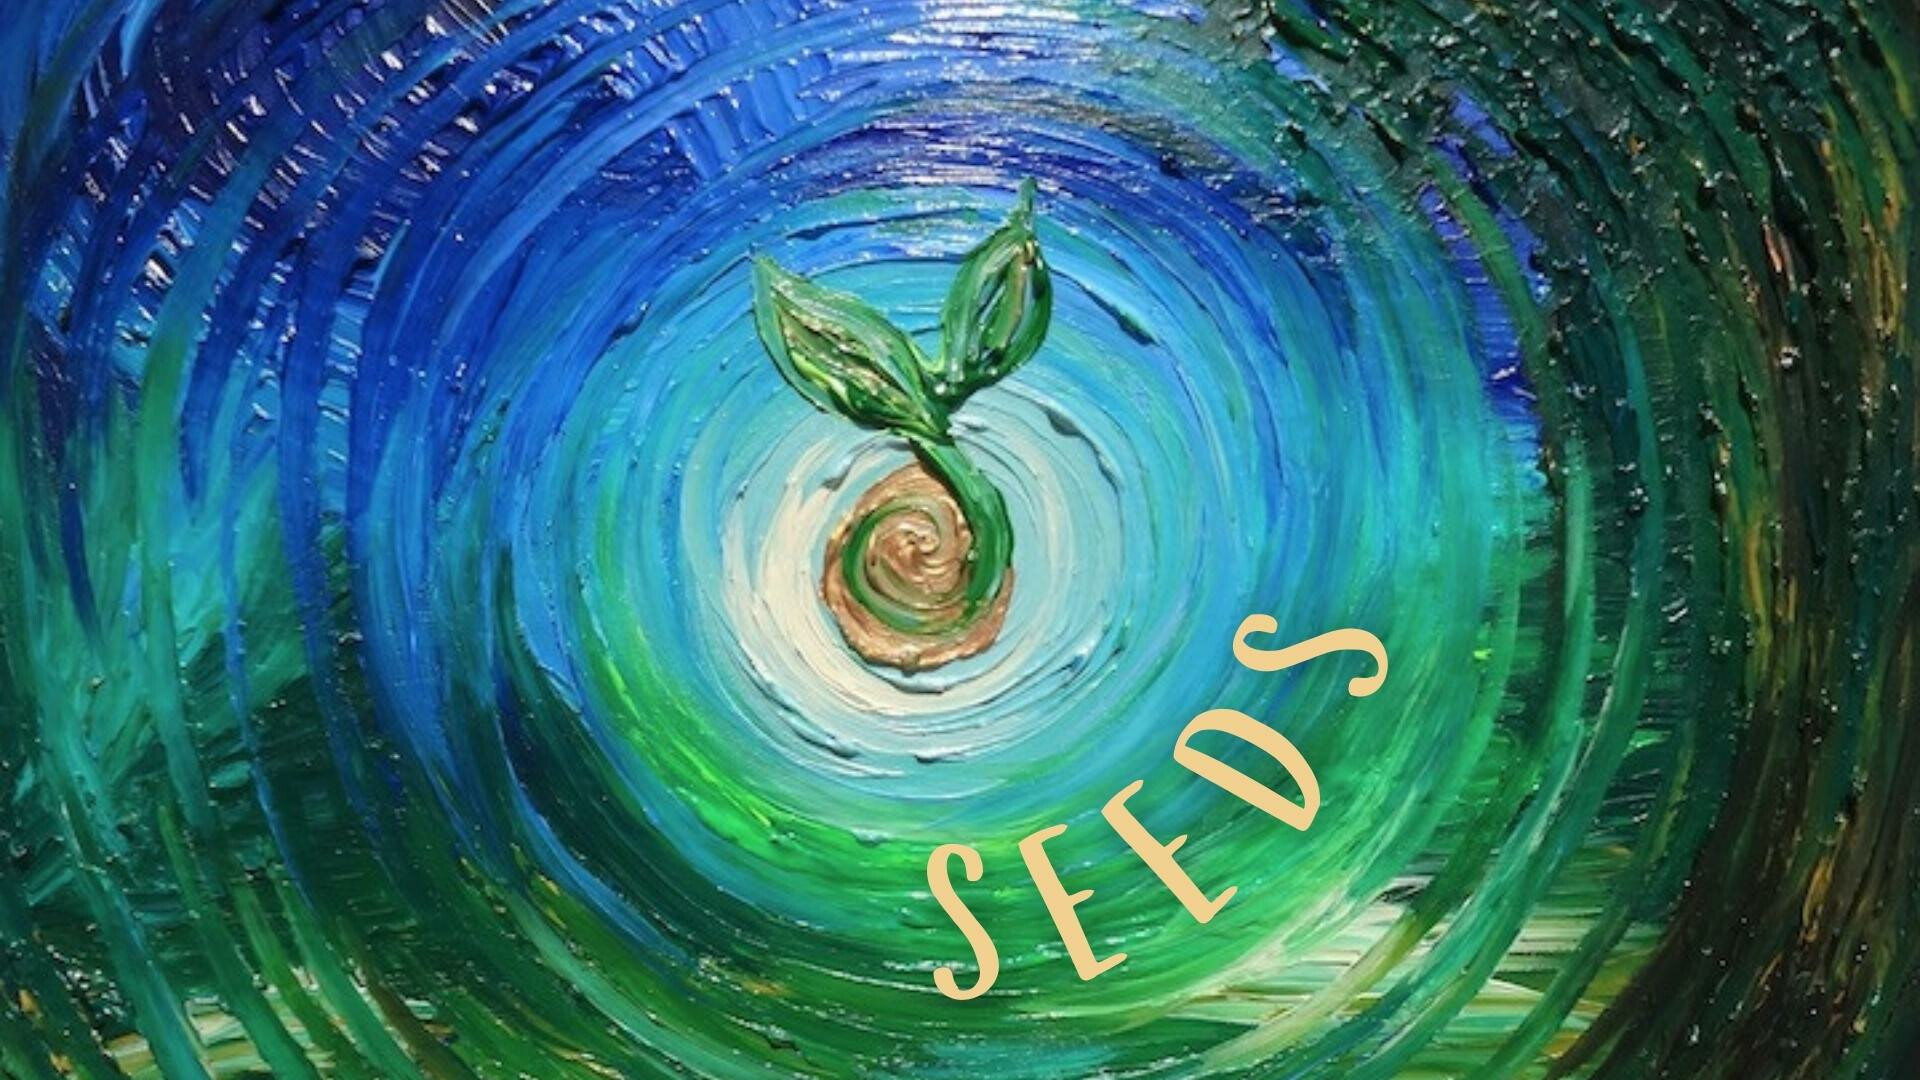 Seeds, Children's Message